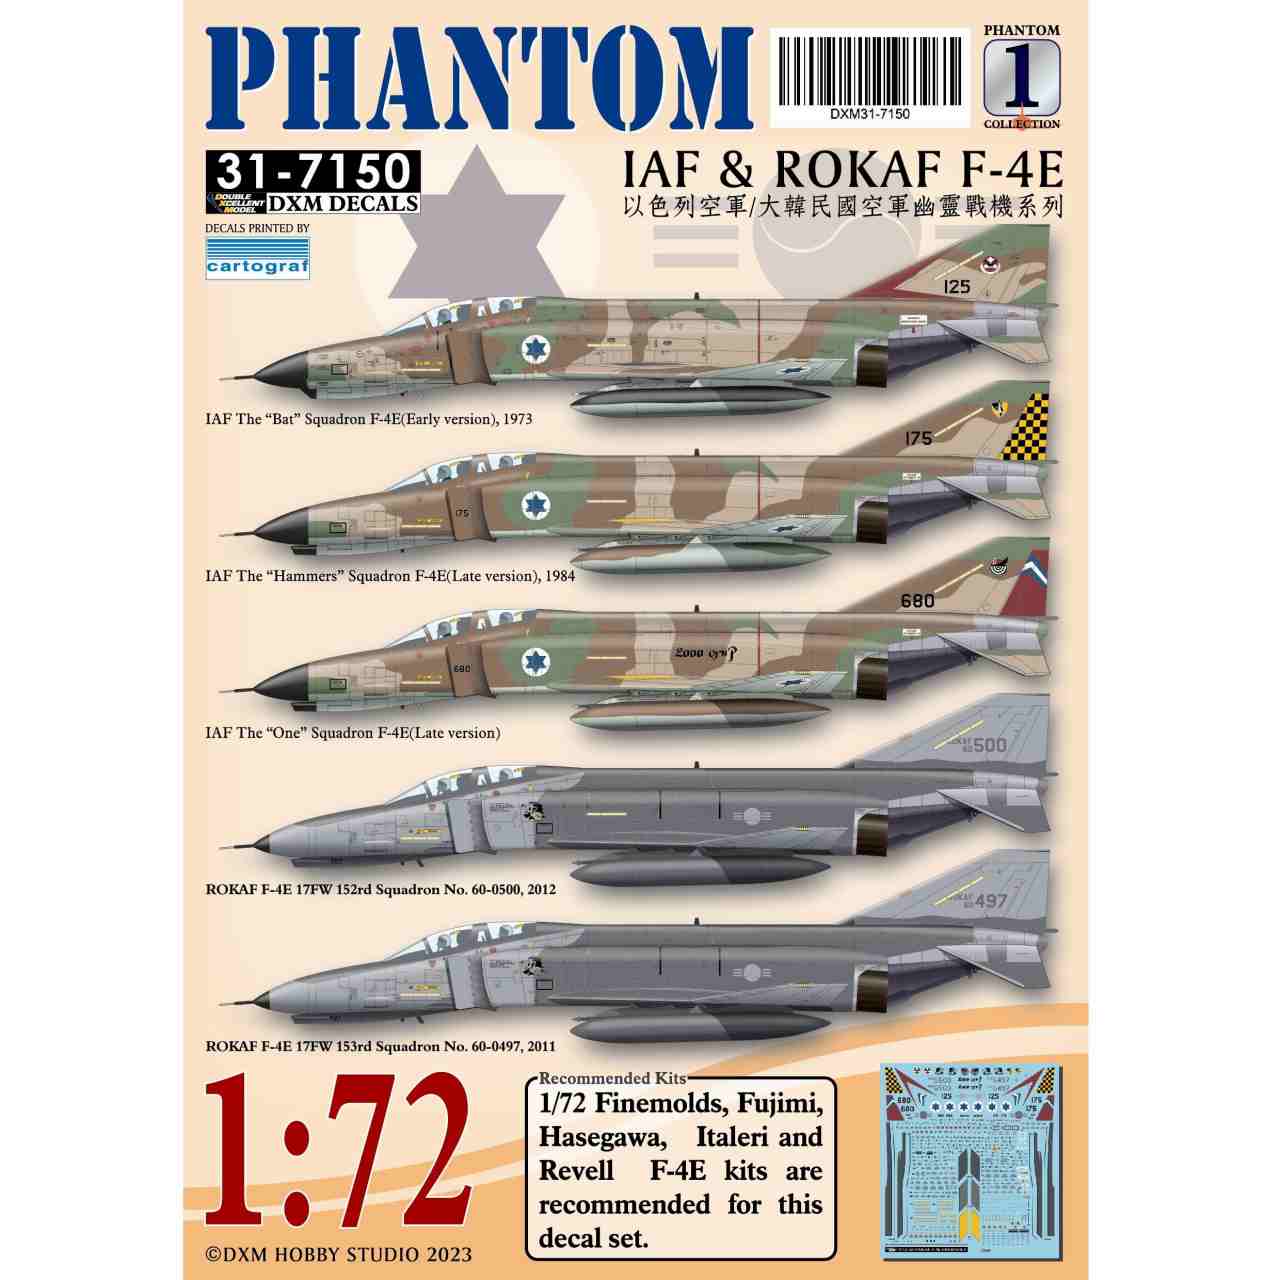 【新製品】31-7150 イスラエル&韓国空軍 F-4E ファントムII Pt.1